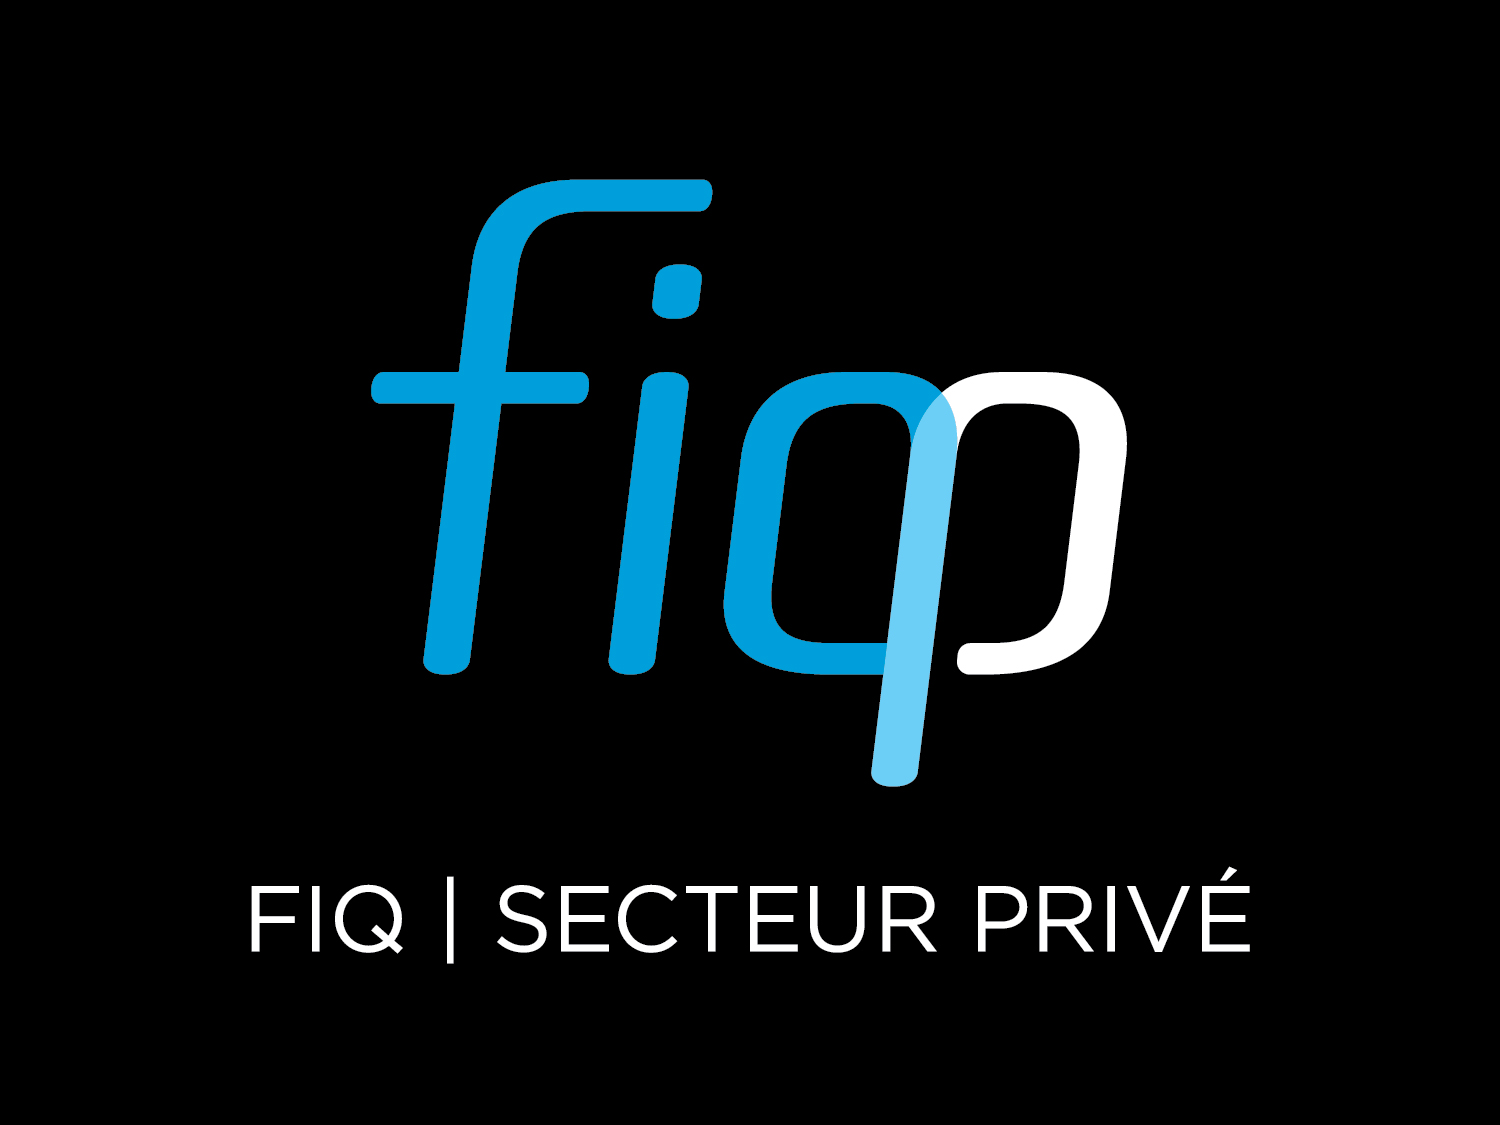 Création de FIQ – Secteur privé: Une nouvelle fédération voit le jour pour défendre les travailleuses et travailleurs de la santé du secteur privé